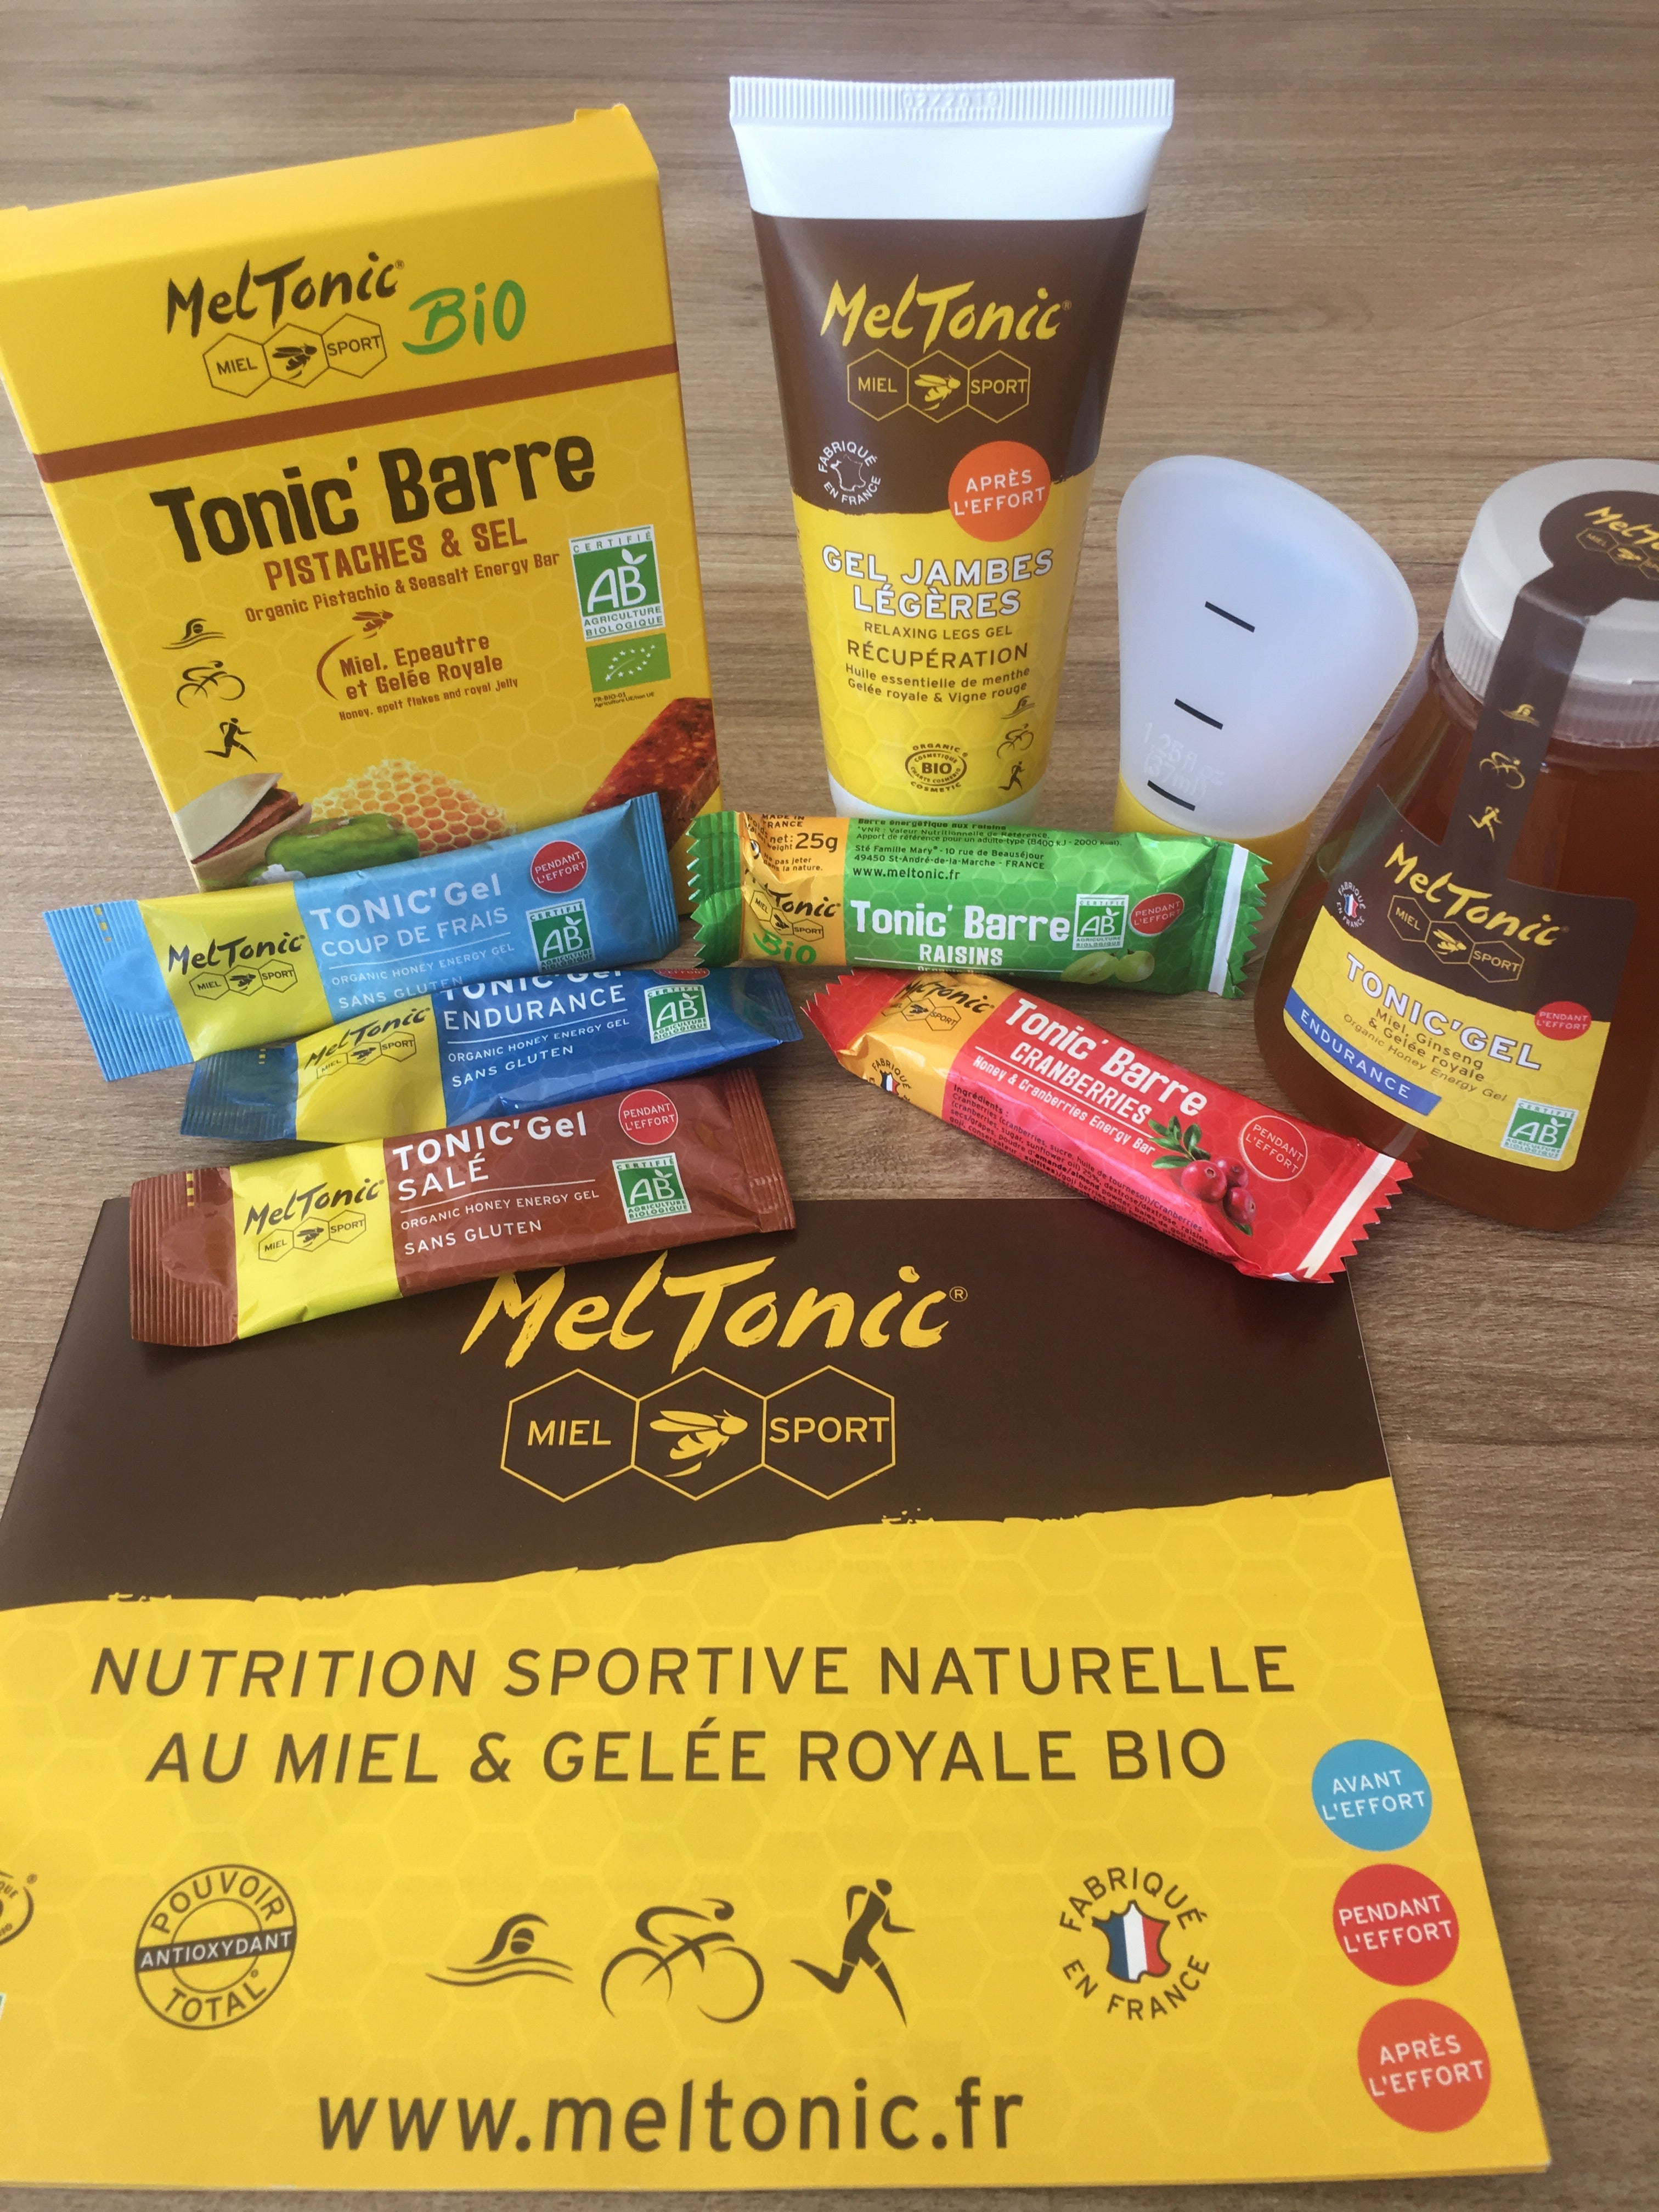 Nutrition sportive naturelle, première gamme au Miel & Gelée royale Bio